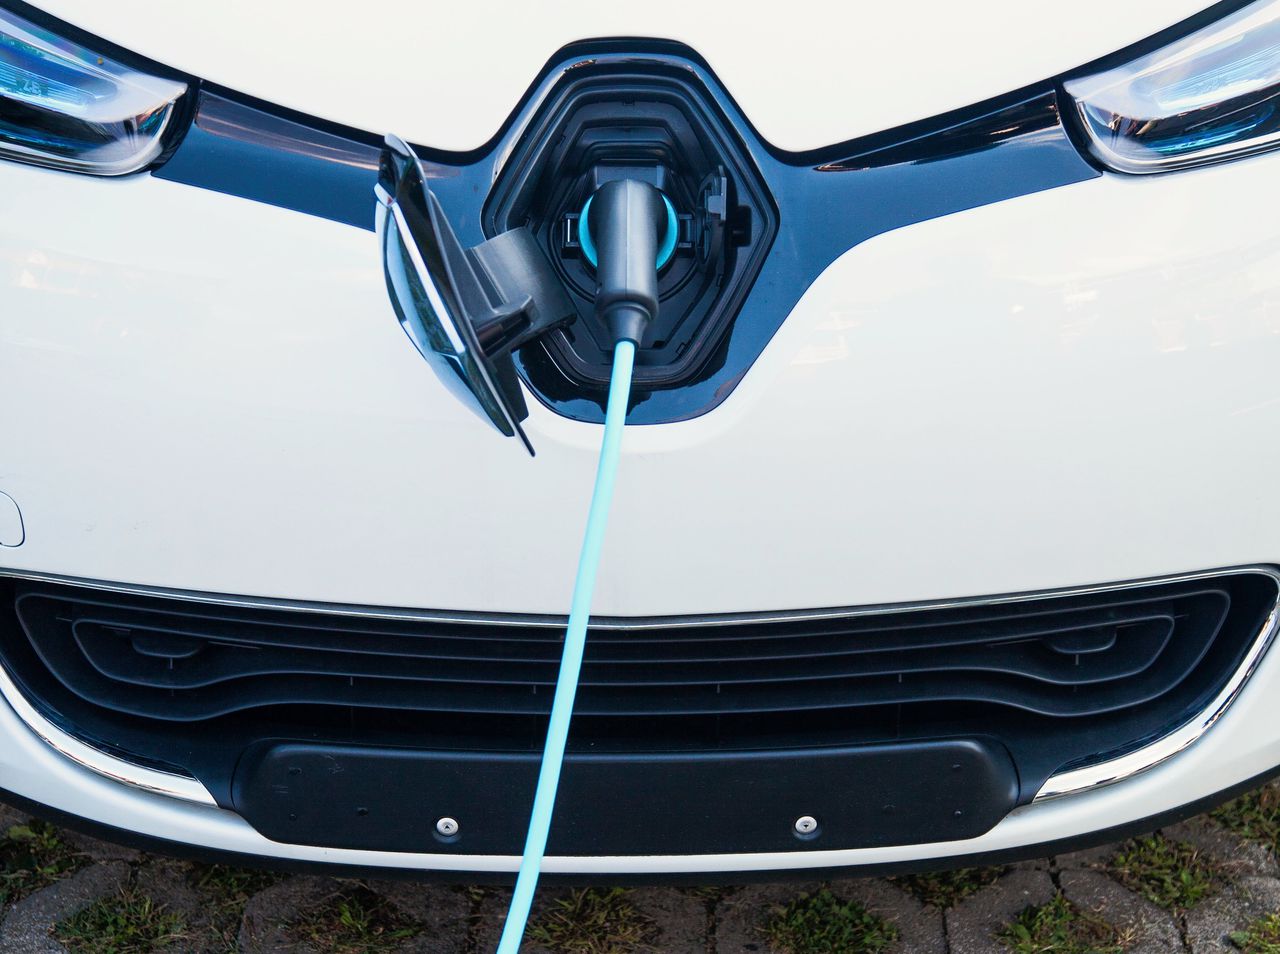 Vooral dankzij het intensievere gebruik van elektrische auto’s wordt naar verwachting over ruim twintig jaar bijna een derde van de mondiale kilometers ‘elektrisch’ afgelegd.